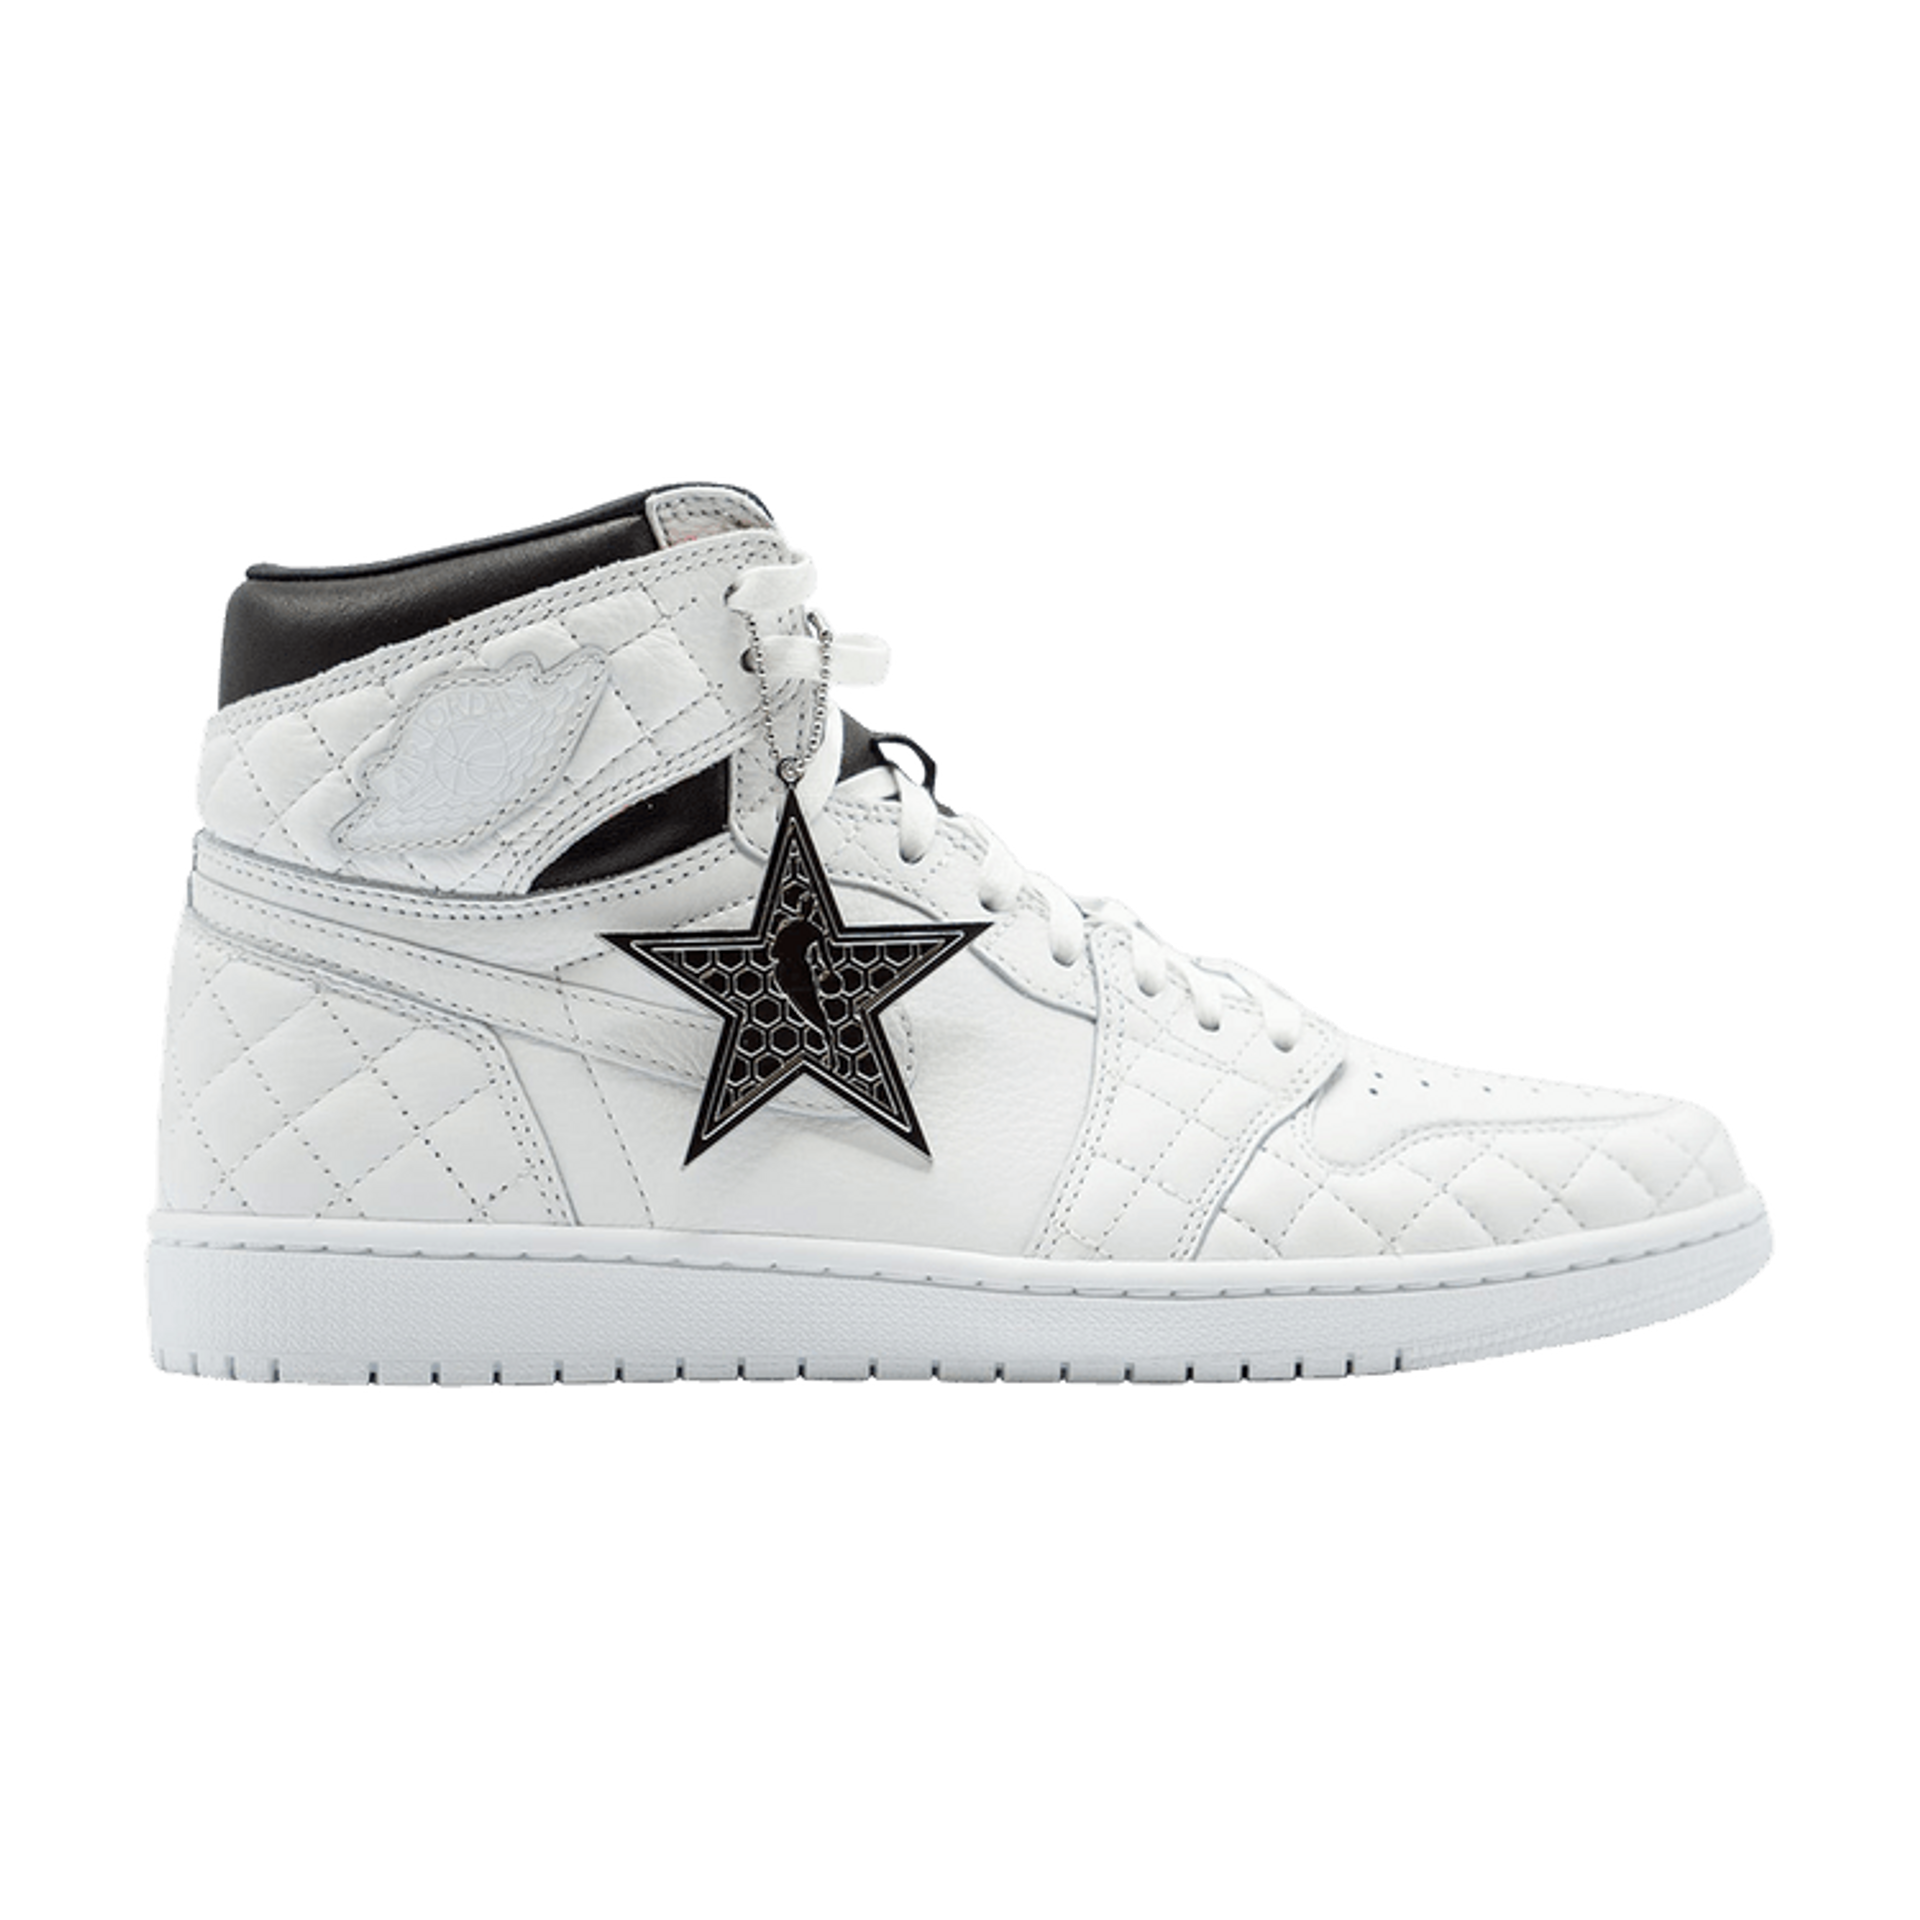 Air Jordan 1 Retro High 'All Star - White' 2019